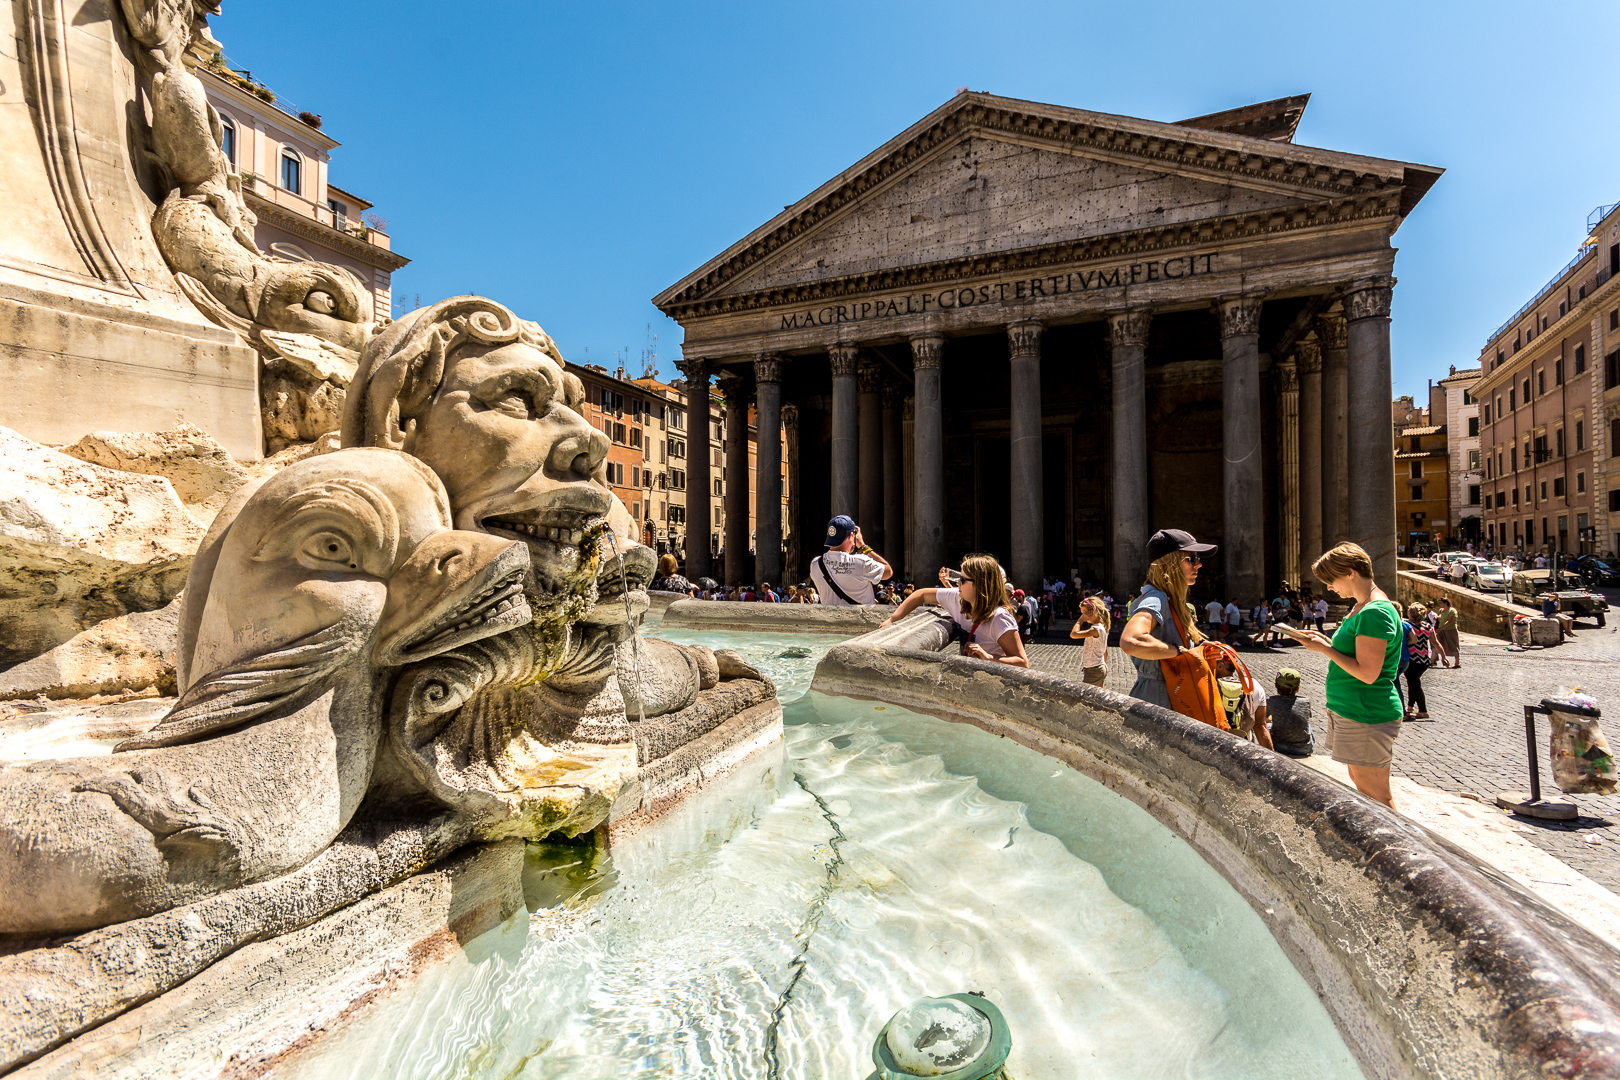 Barocker Brunnen und antiker Tempel in Rom